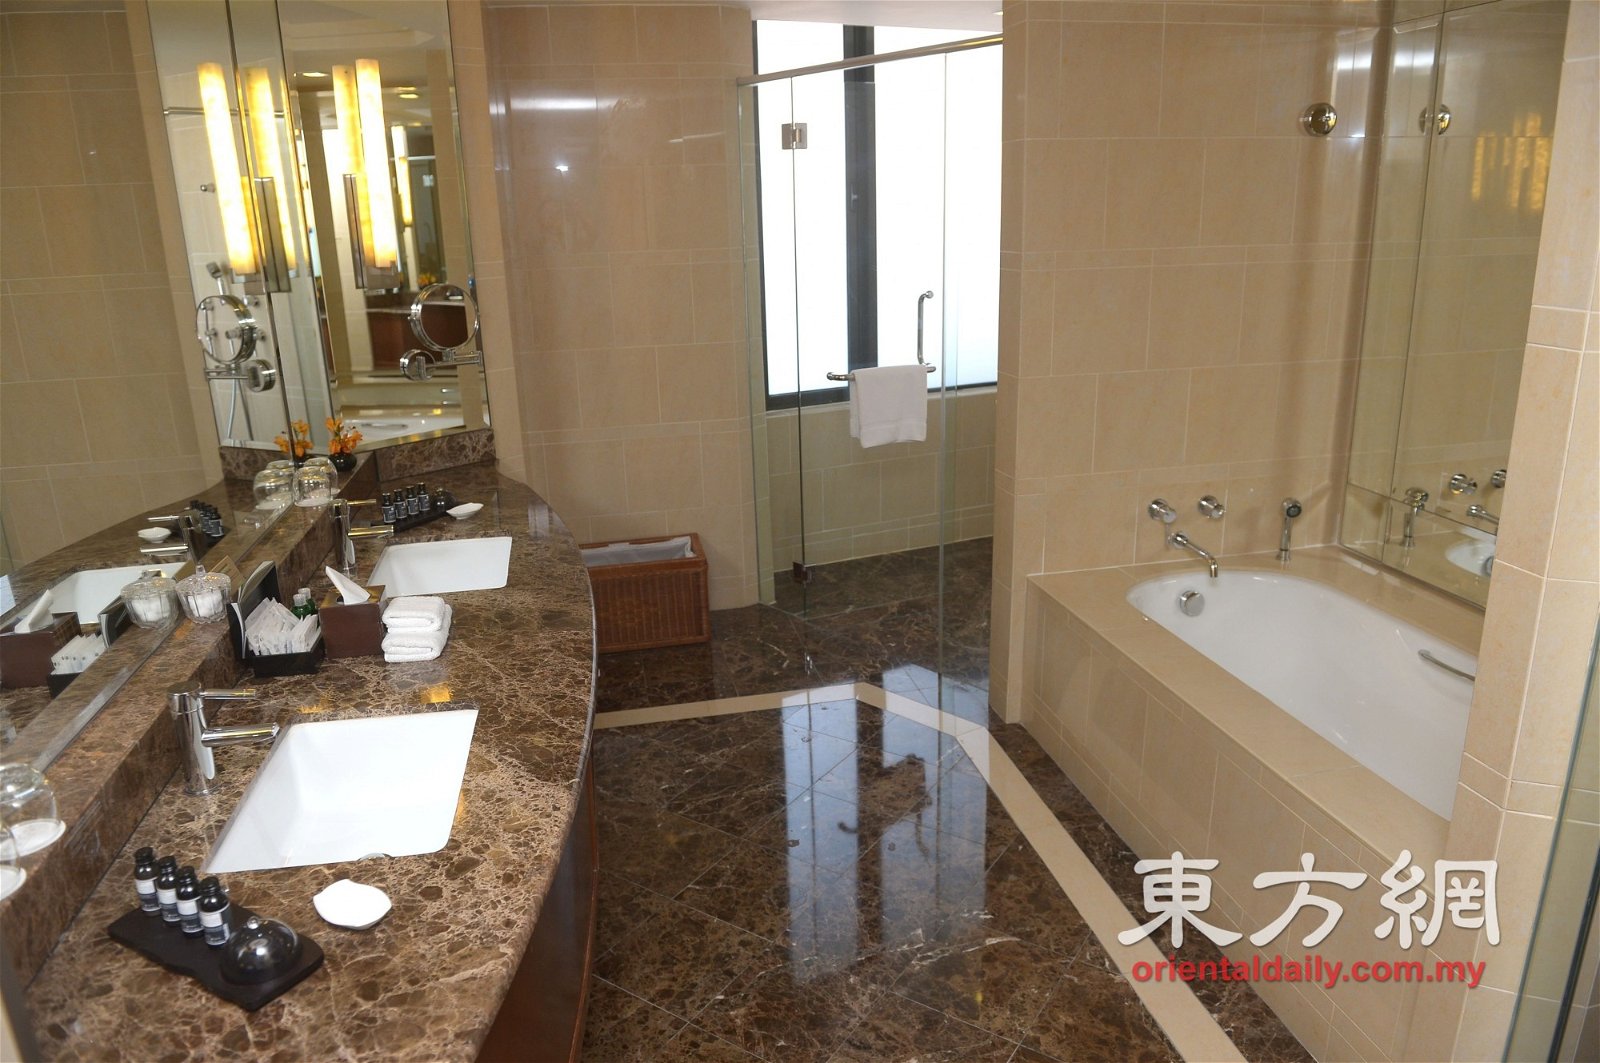 行政尊贵套房拥有各自独立的浴缸、浴室和厕所，让顾客有足够和舒适的空间享受沐浴时光。